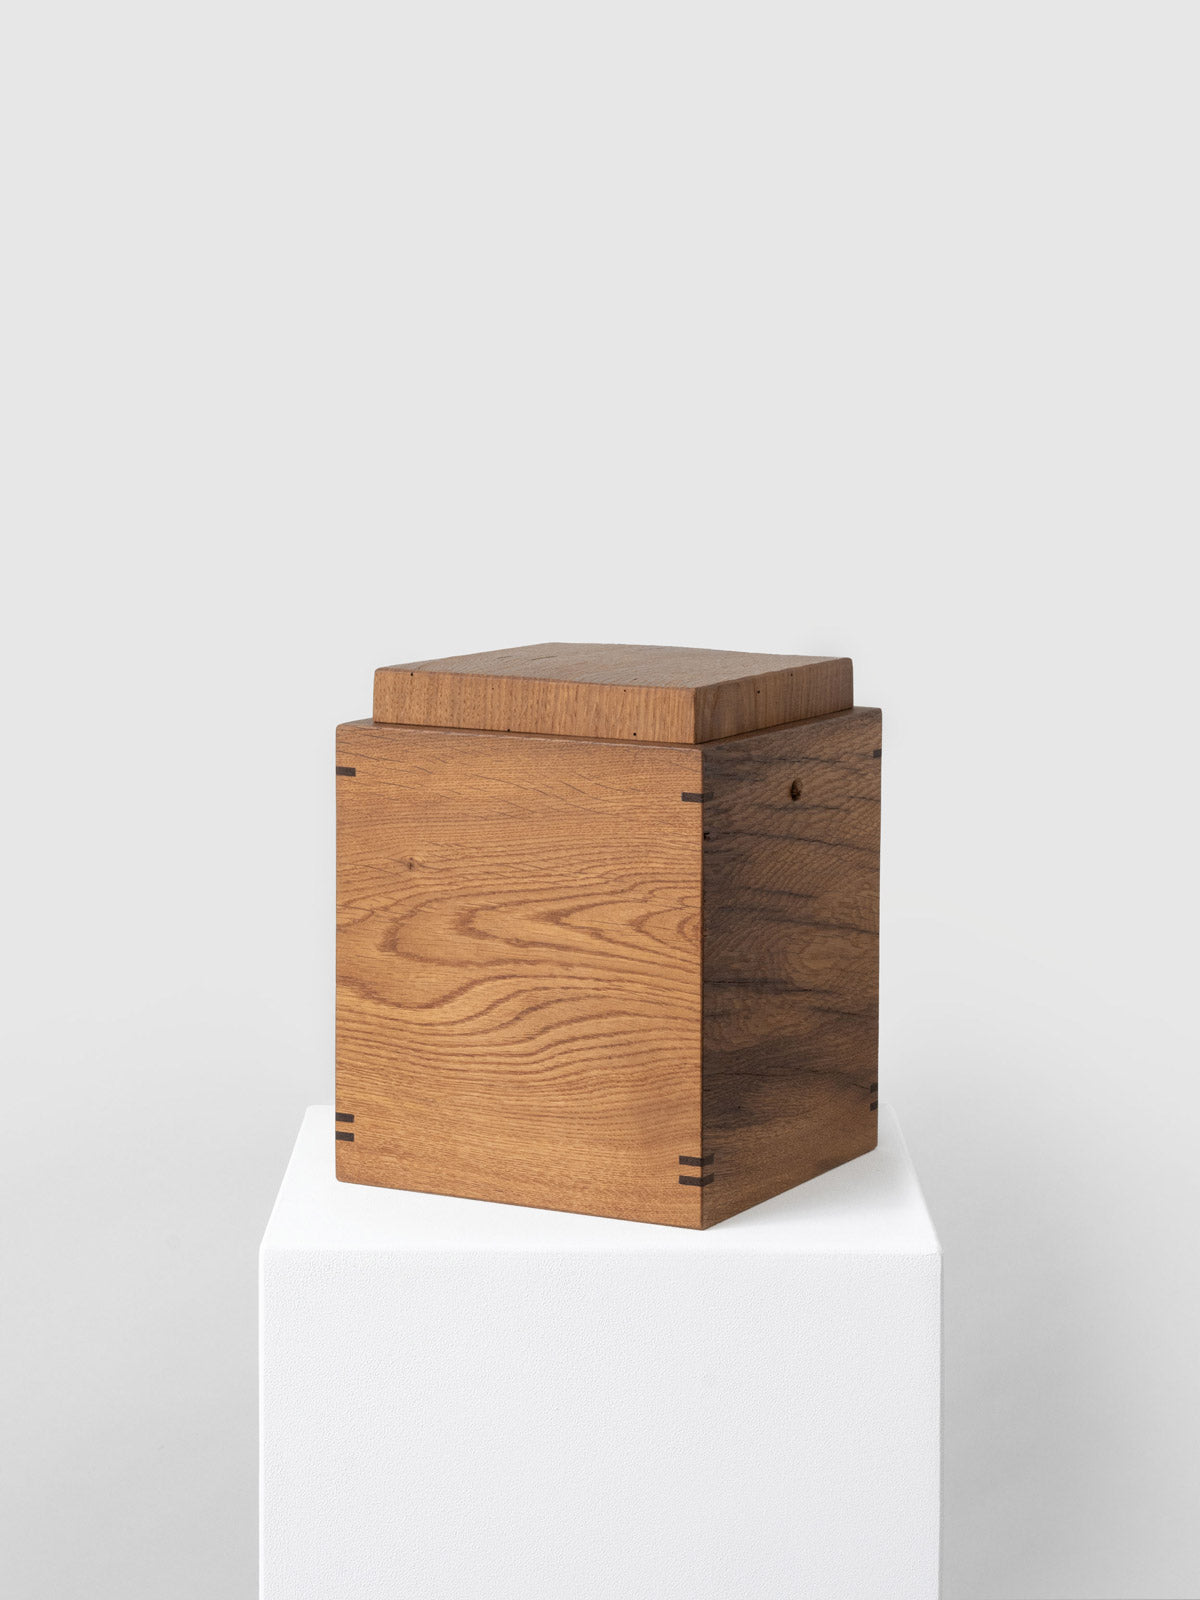 Holzurne aus recyceltem Holz, abbaubar für Urnenbestattung und Naturbestattung